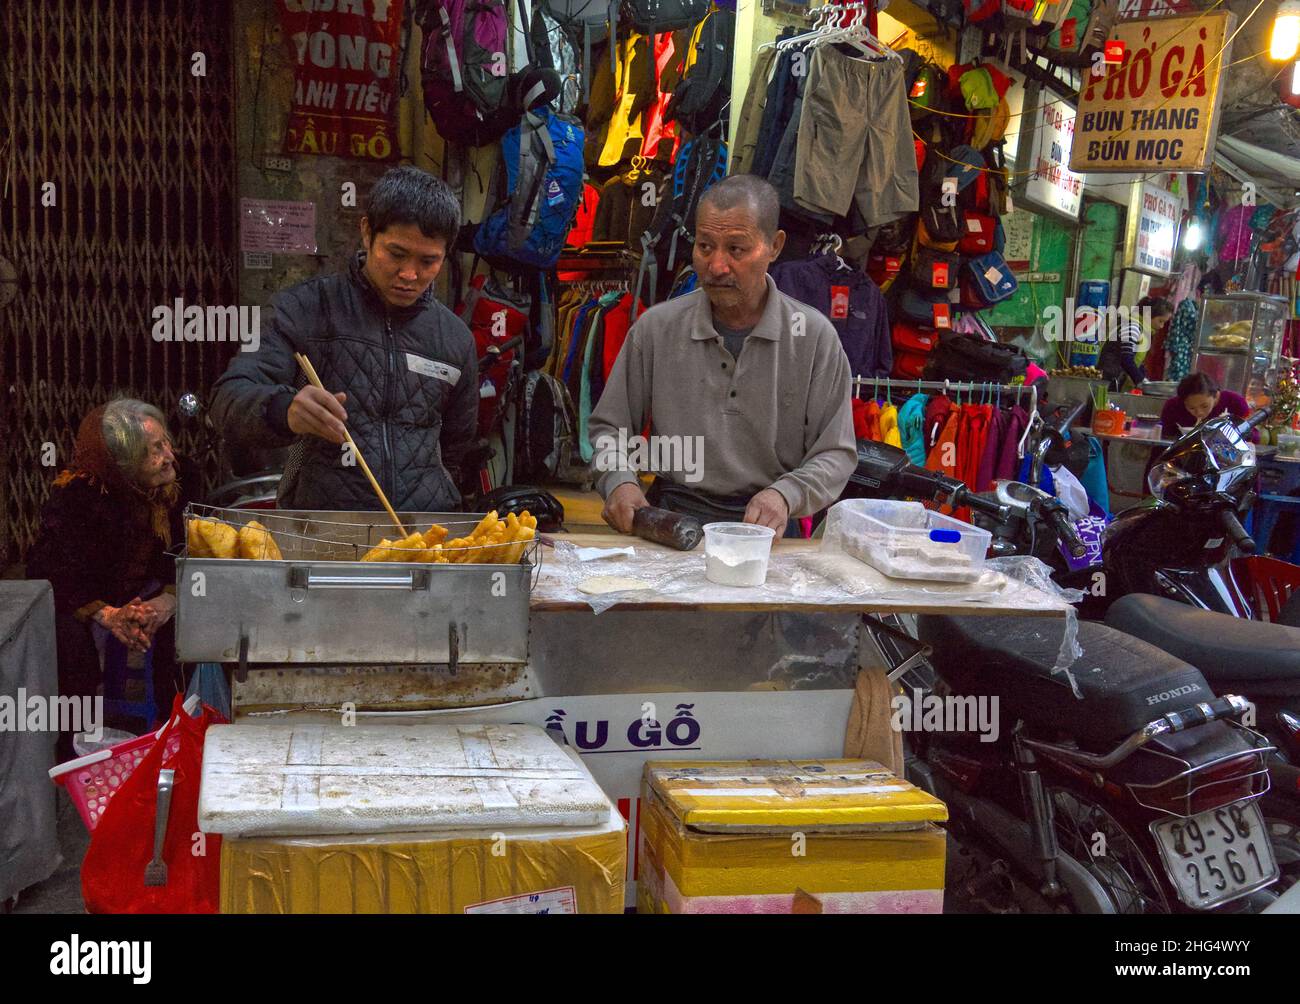 Ein vietnamesisches Paar verkauft abends auf der Straße frittierte Backwaren in einer typischen situation - die Oma sitzt in der Ecke und schaut zu Banque D'Images